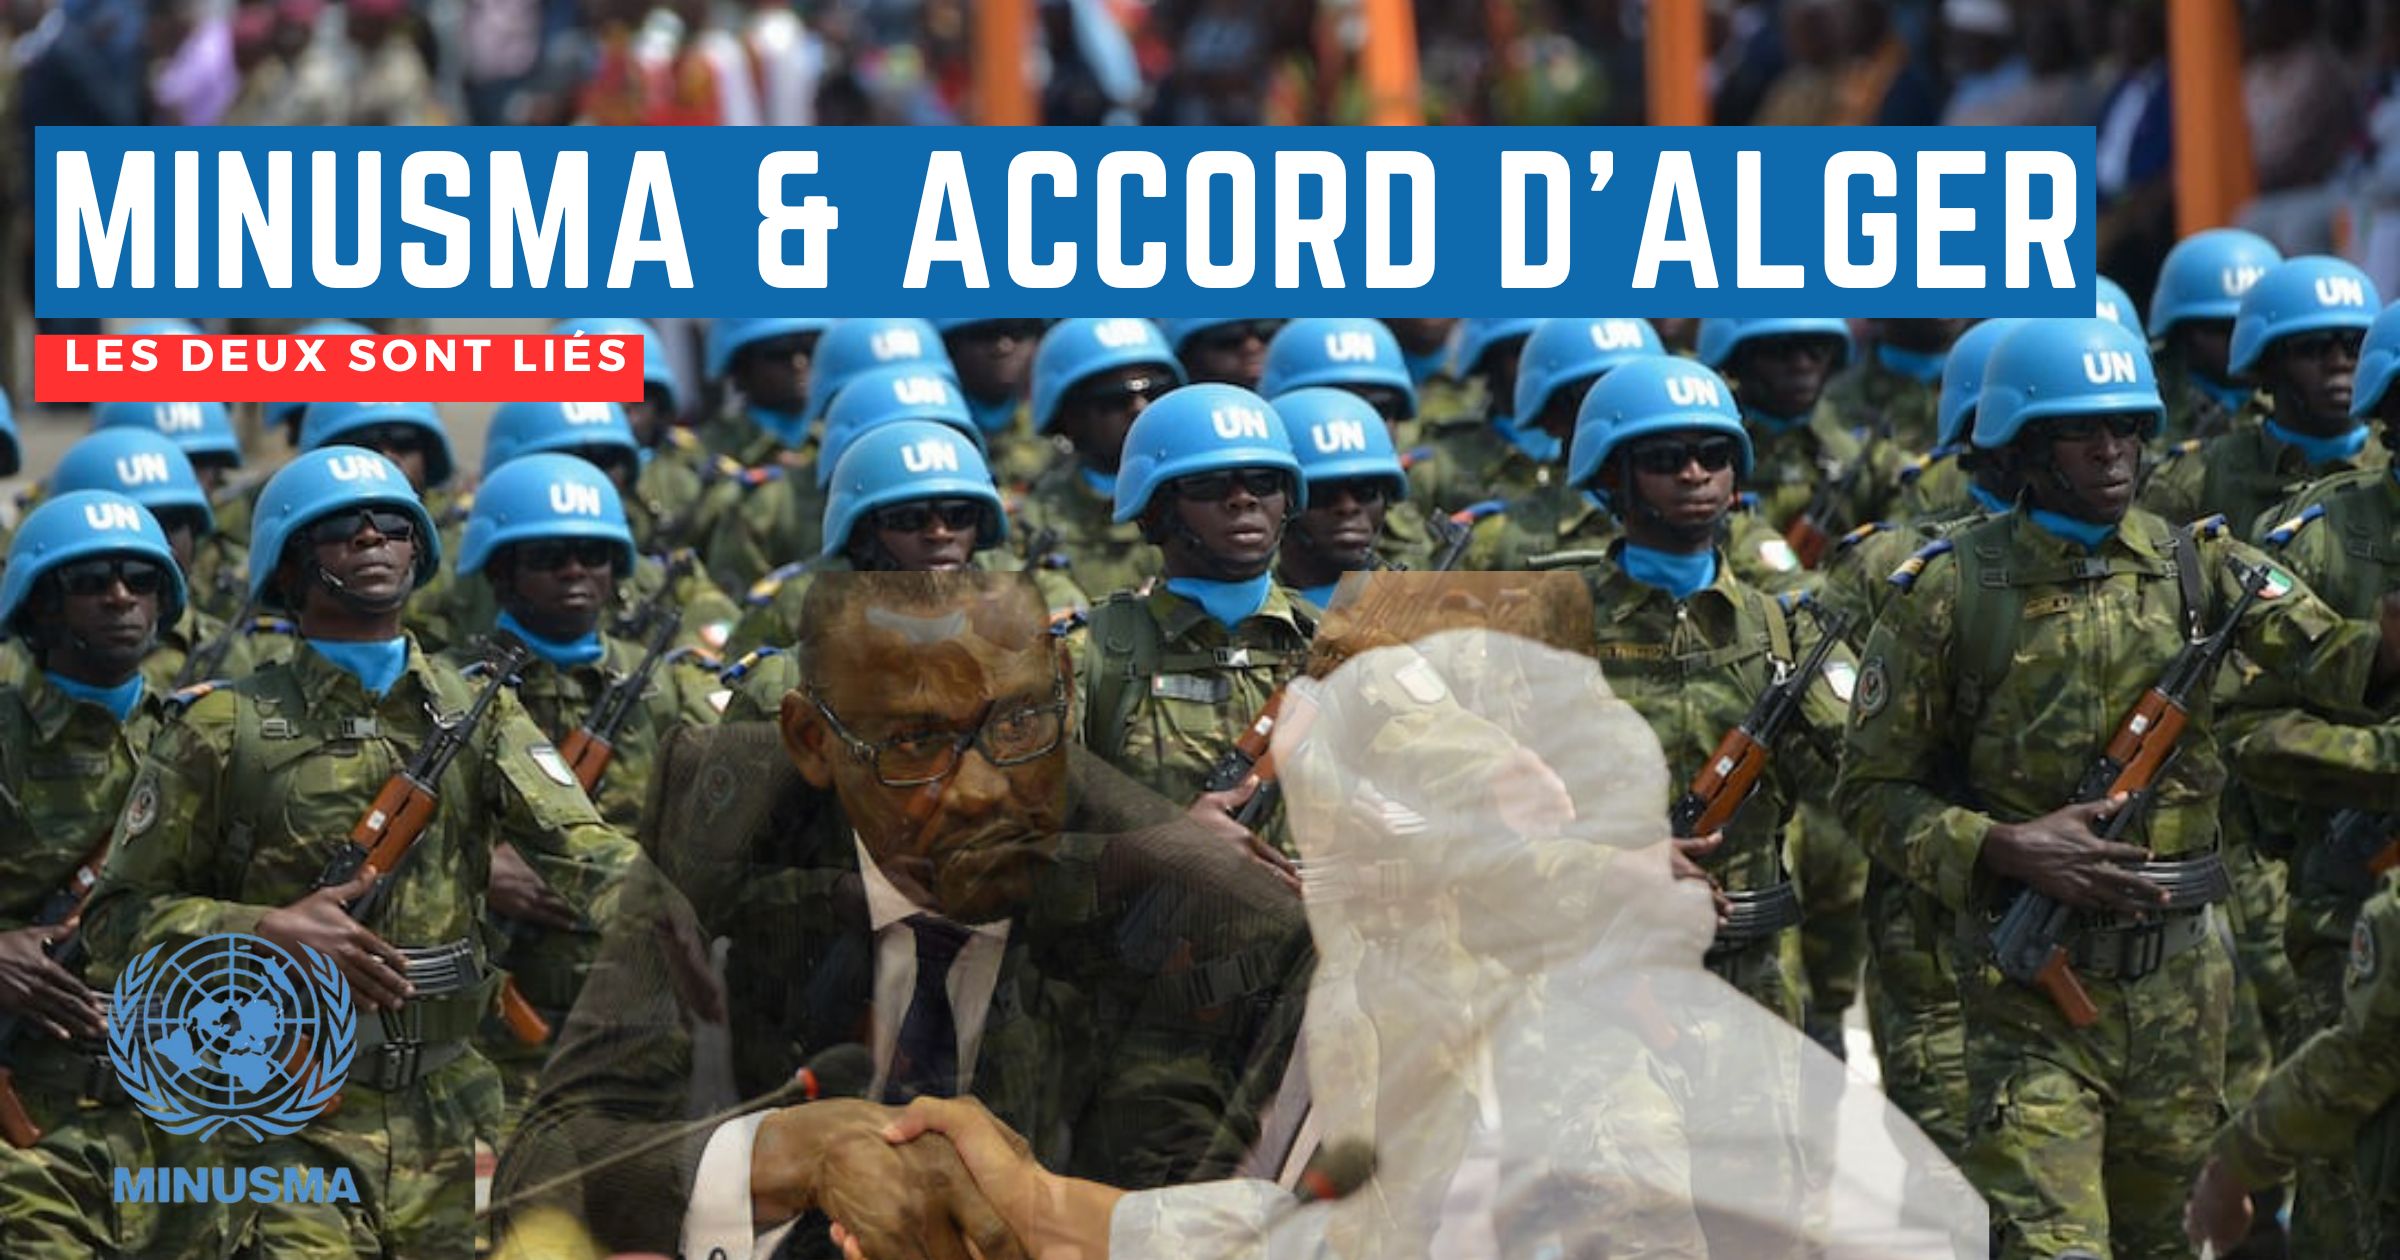 La MINUSMA et l'application de l'accord pour la paix et réconciliation au Mali issu du processus d'Alger sont liés